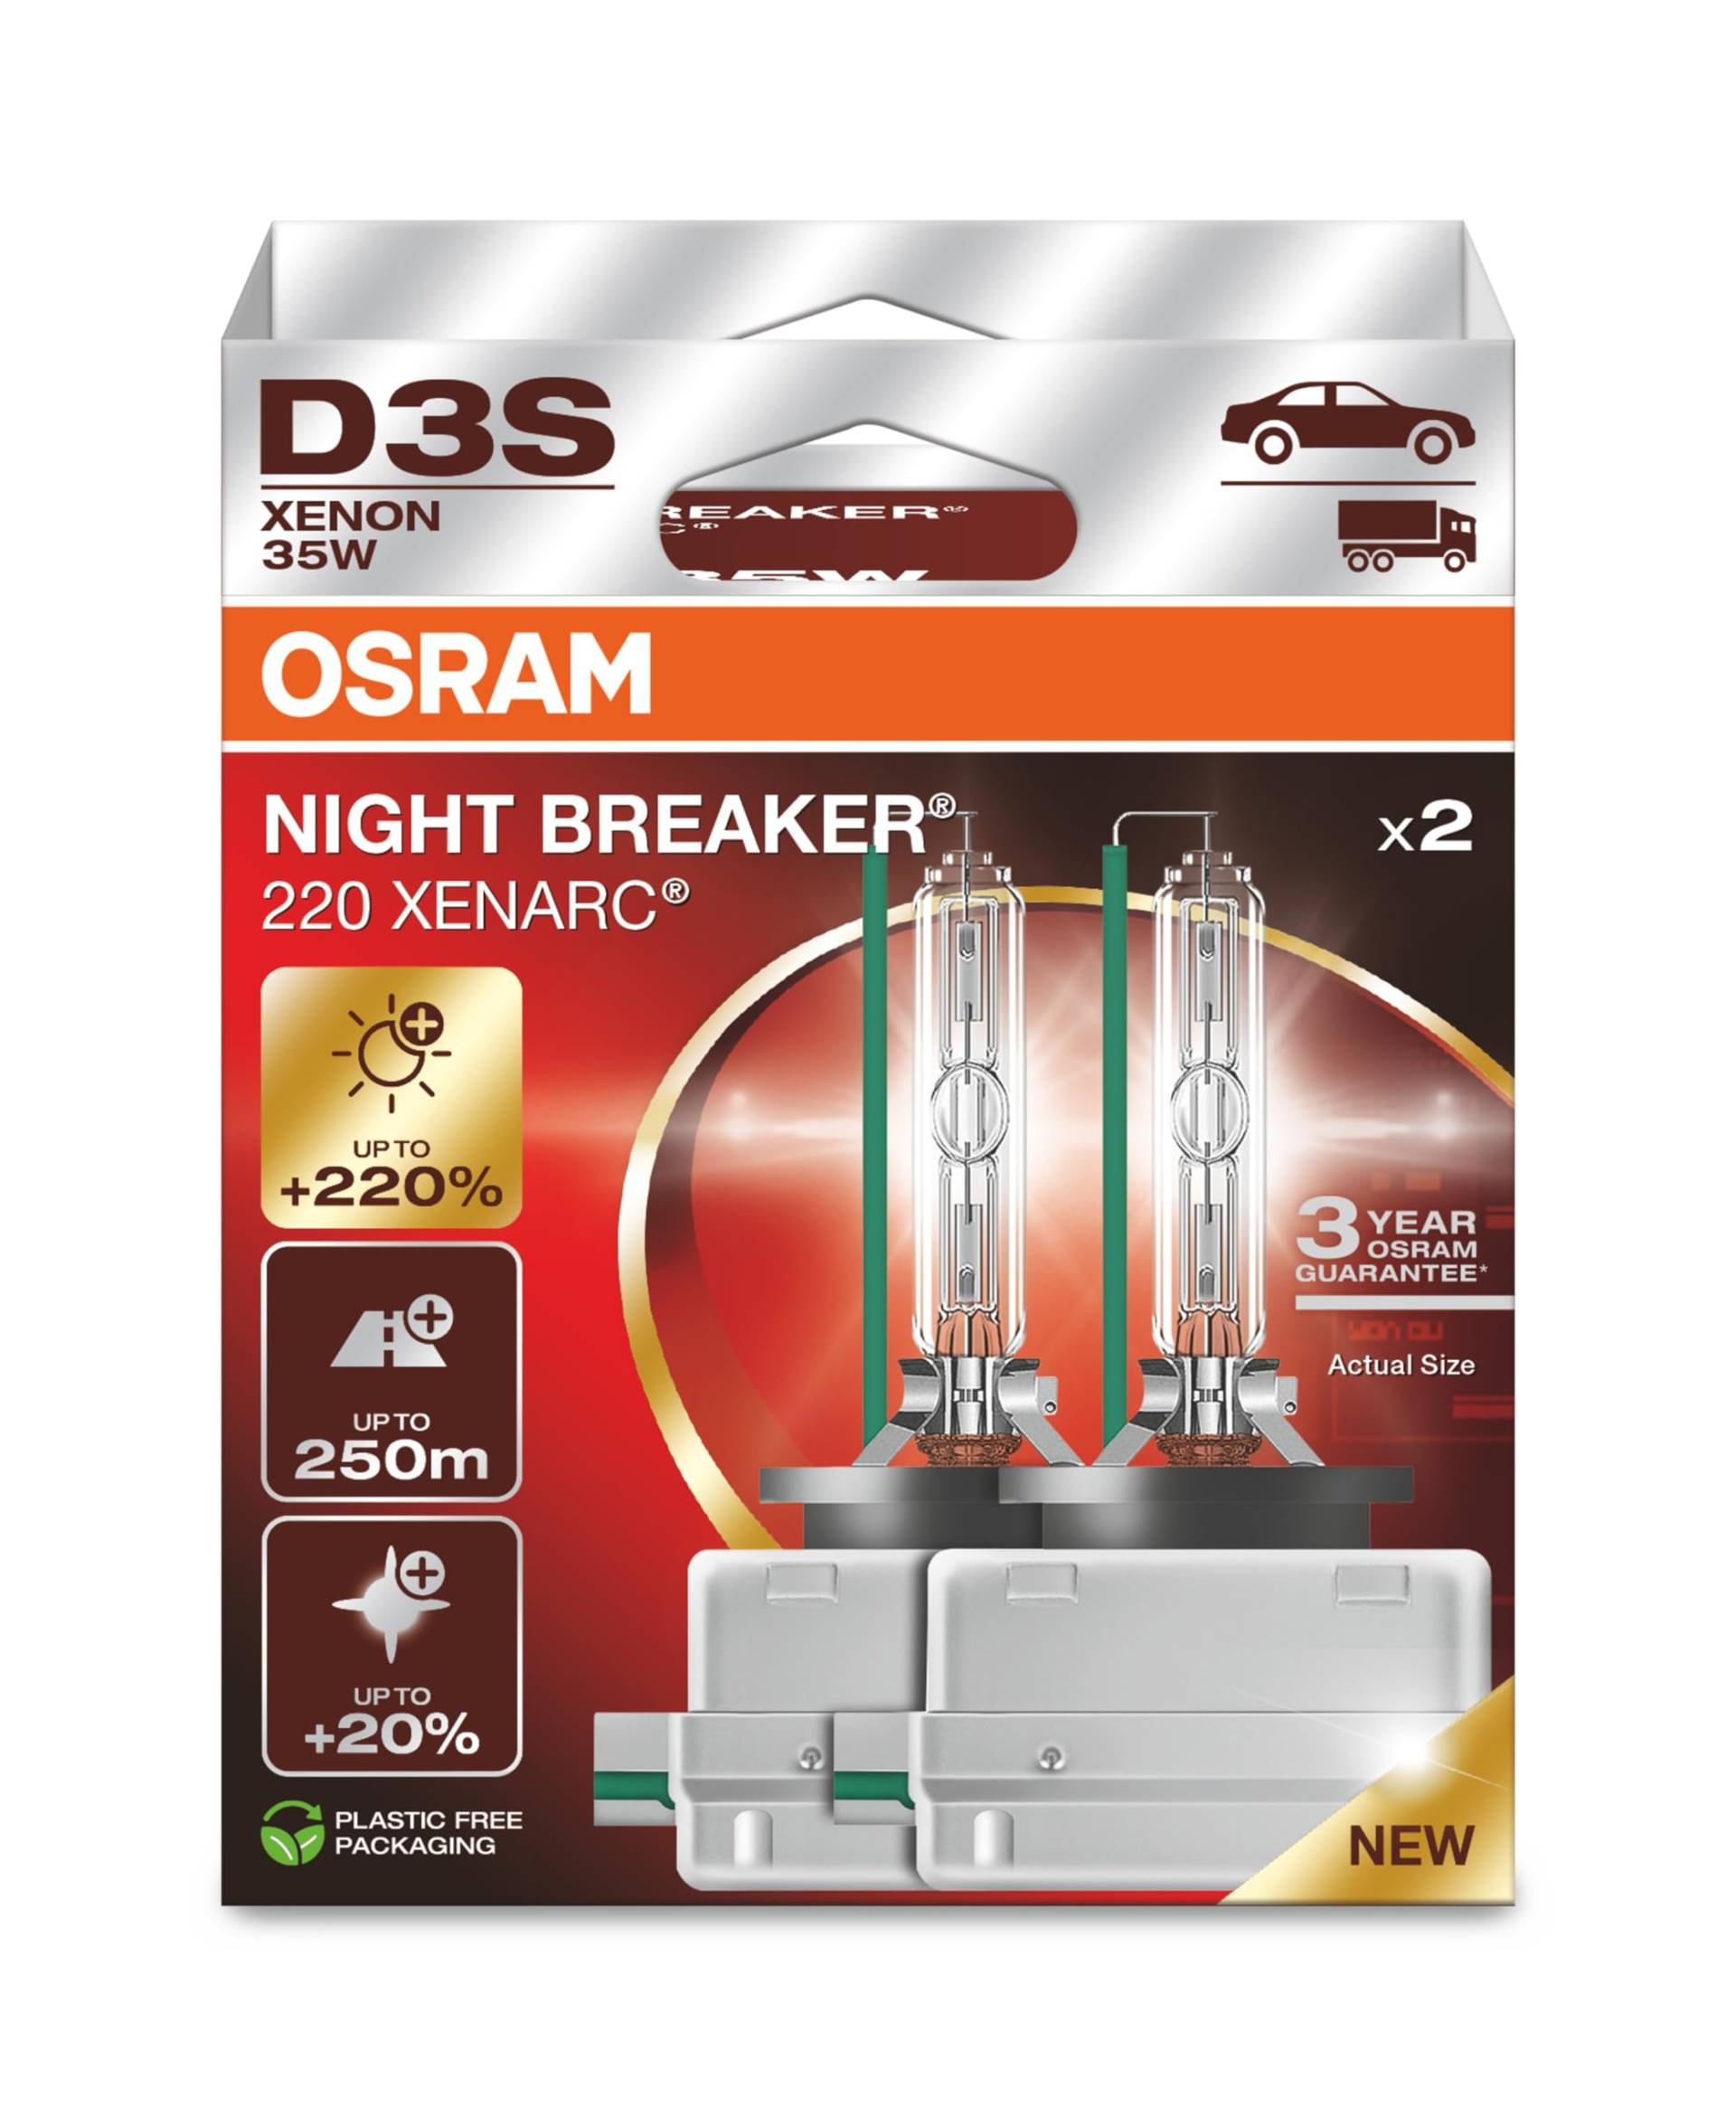 OSRAM XENARC NIGHT BREAKER 220, D3S, 220% mehr Helligkeit, Xenon-Scheinwerferlampe, 66340XN2-2HB, Faltschachtel (2 Lampen) von Osram